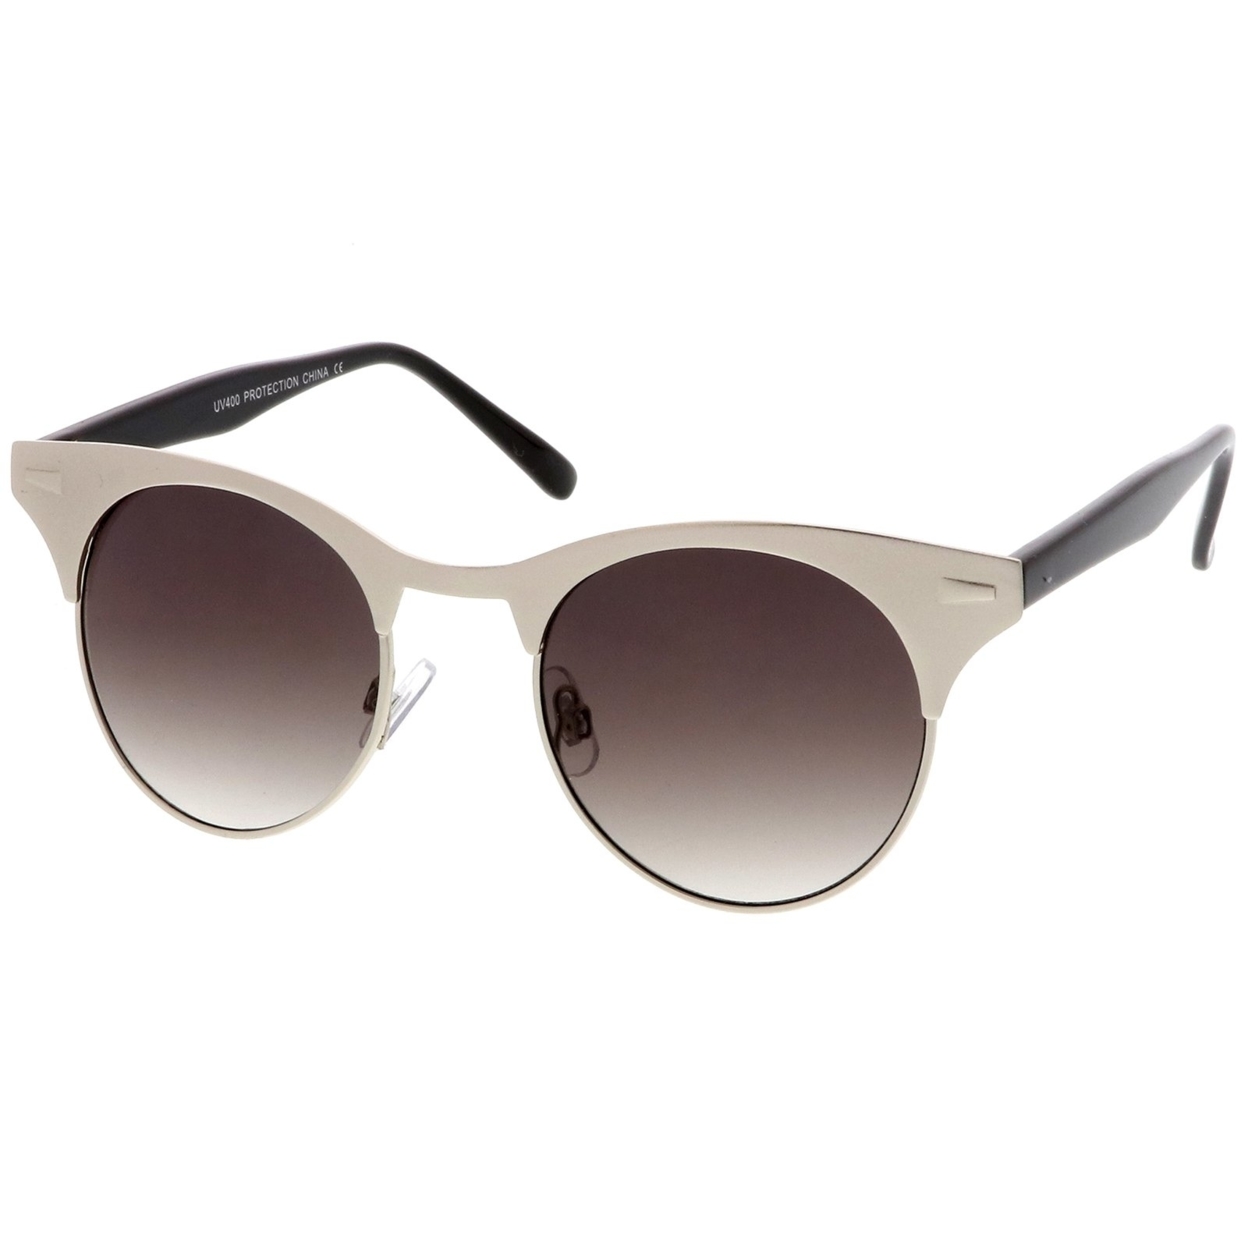 Women's Matte Finish Horn Rimmed Round Flat Lens Cat Eye Sunglasses 49mm - Gold-Black / Smoke